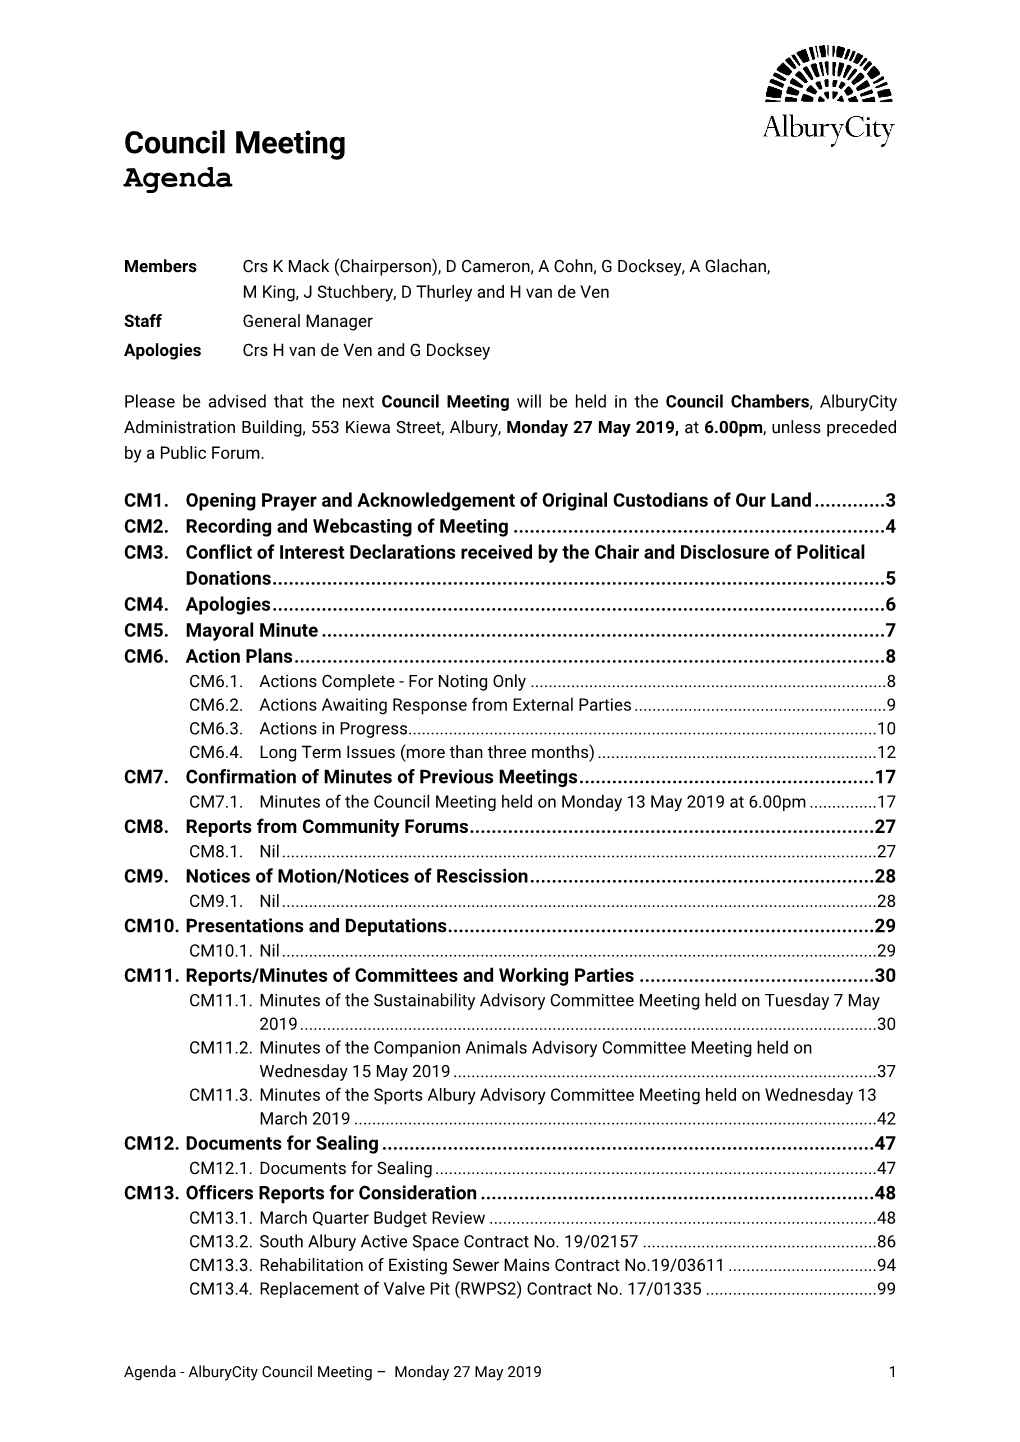 Council Meeting Agenda 27 May 2019